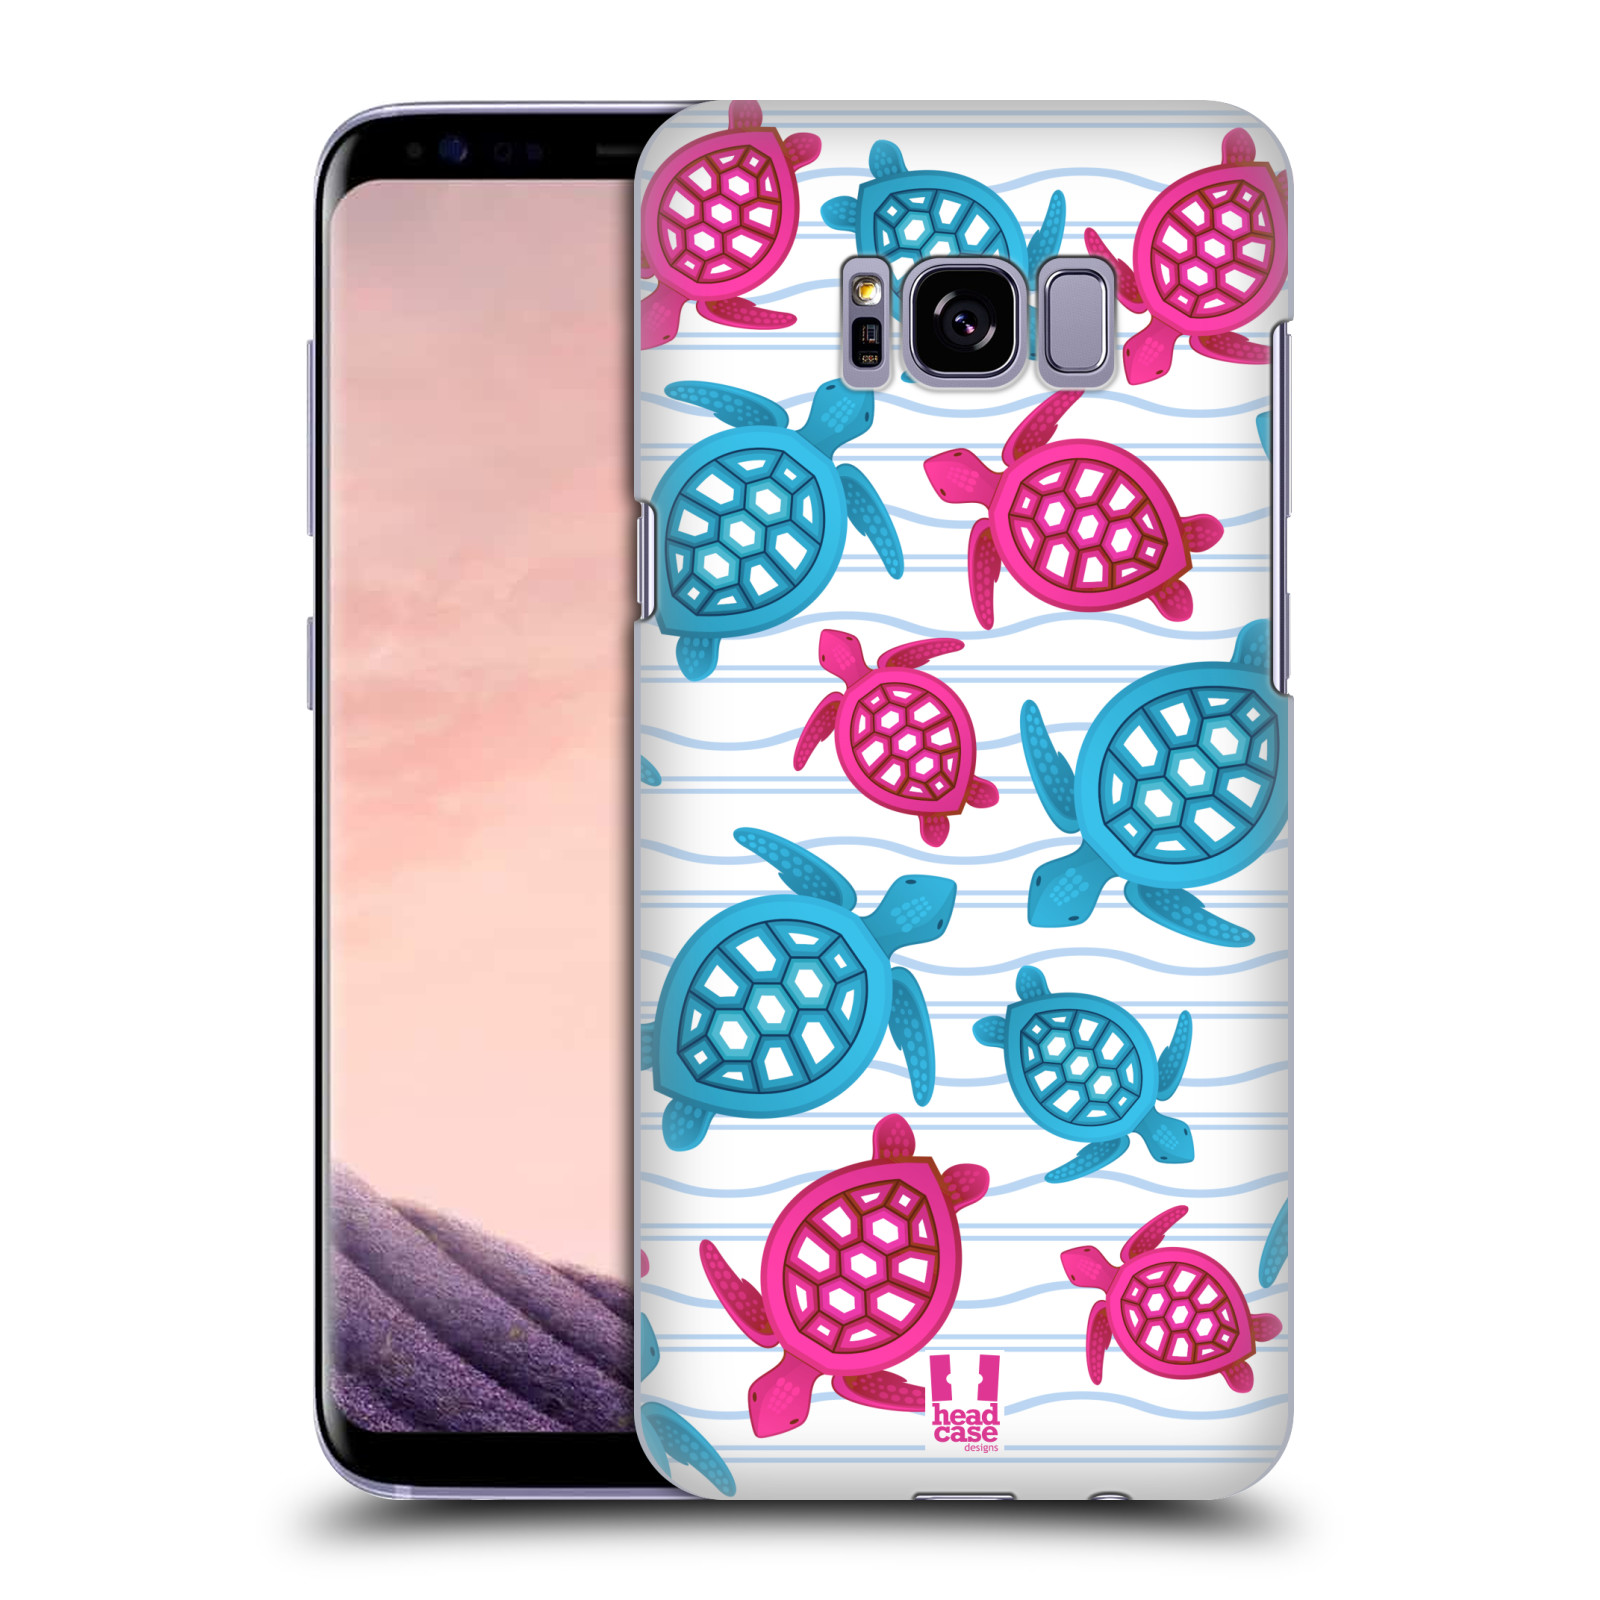 Zadní obal pro mobil Samsung Galaxy S8 PLUS - HEAD CASE - kreslený mořský vzor želvičky